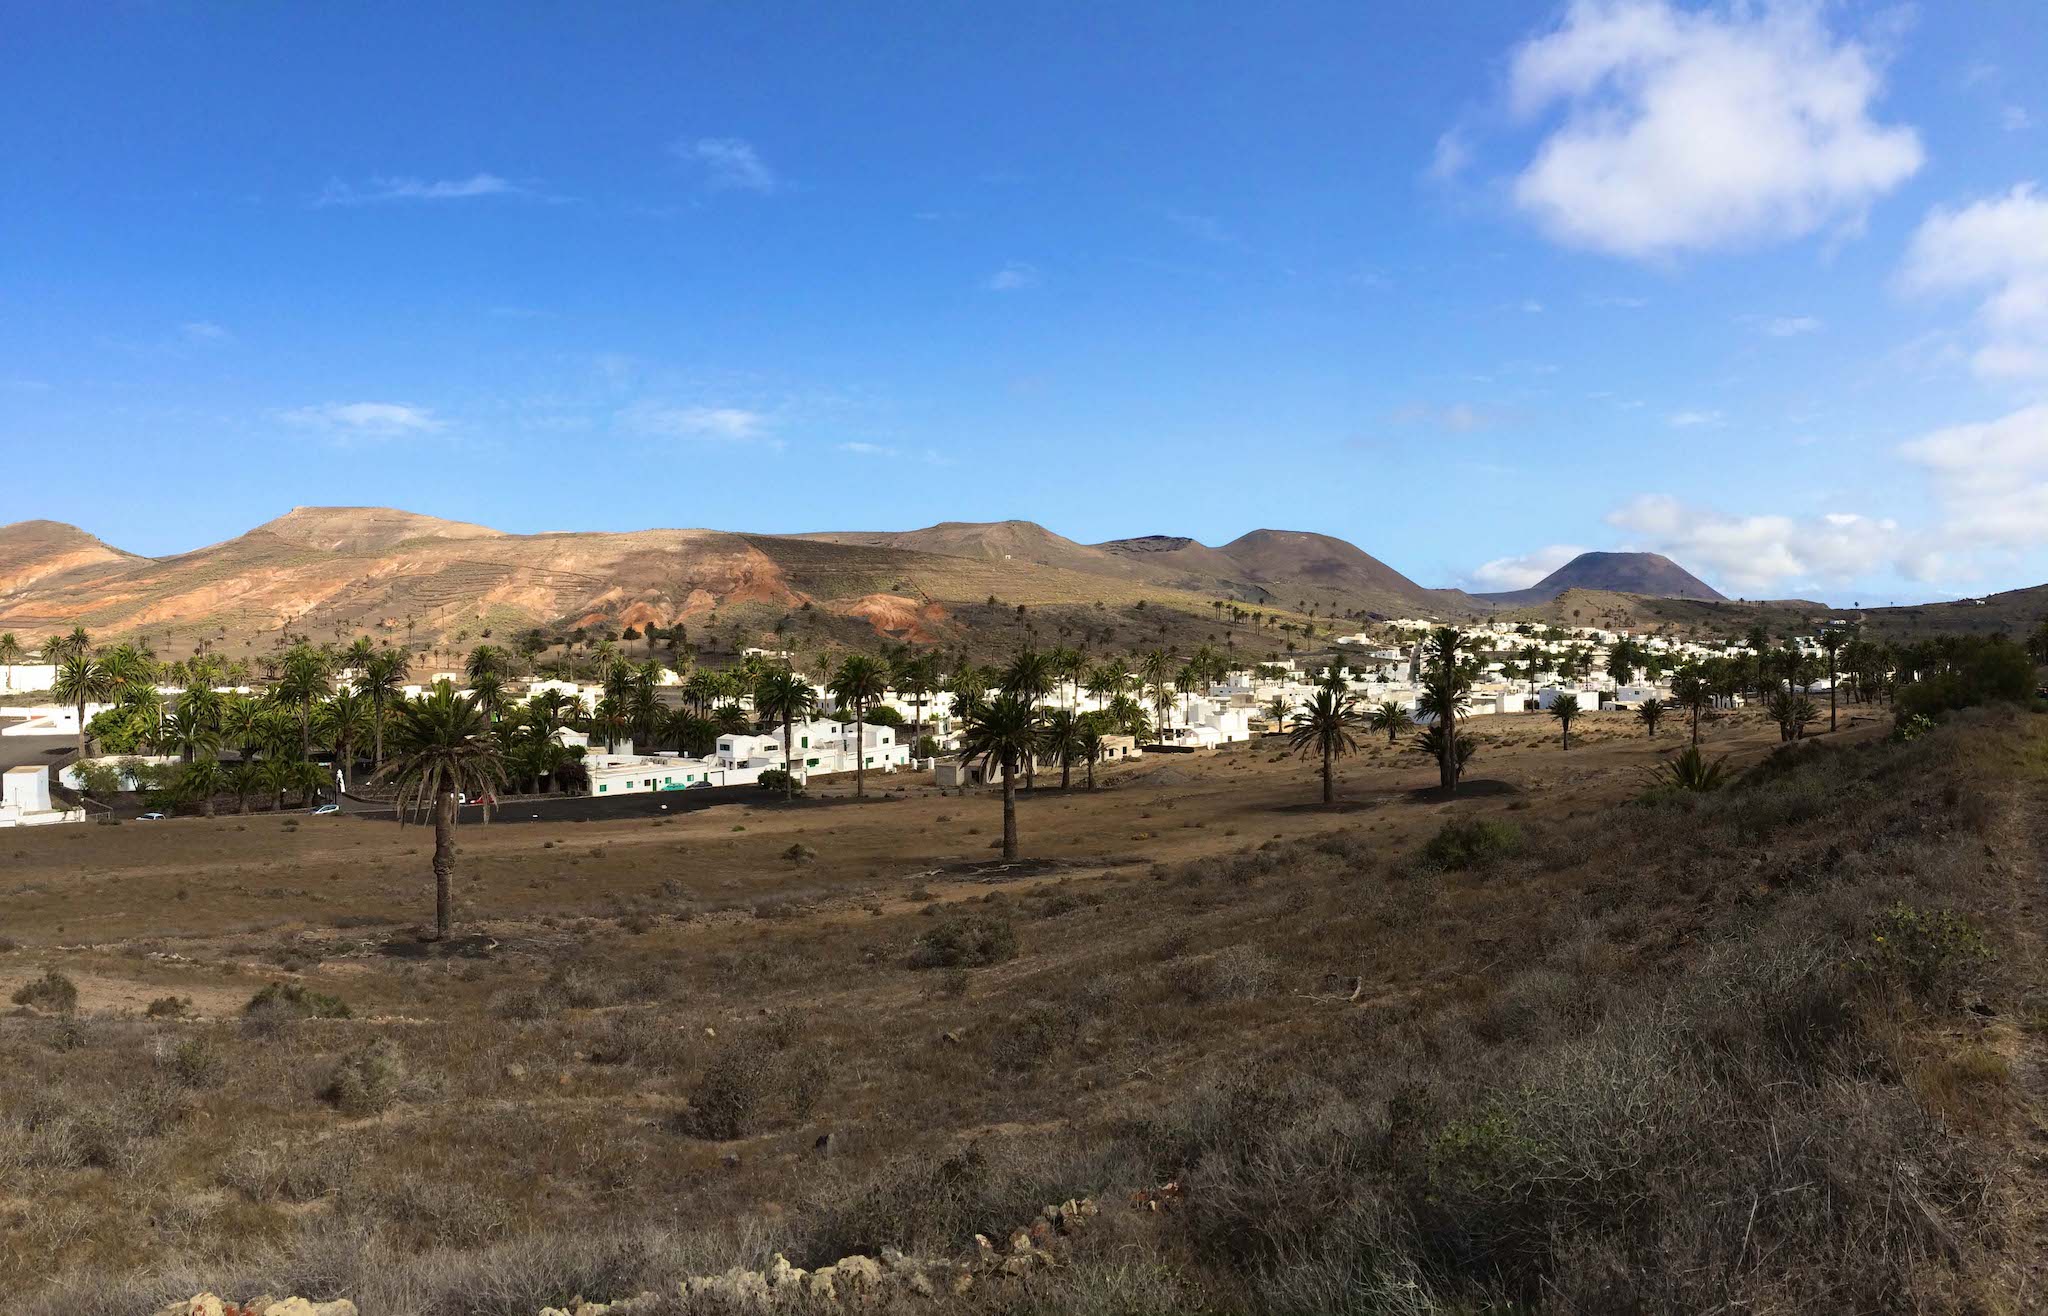 Tal der 1000 Palmen: Im kleinen Ort Haria auf Lanzarote wachsen unheimlich viele Palmen im Kontrast zu der sonst recht kargen Landschaft. Foto: Sascha Tegtmeyer